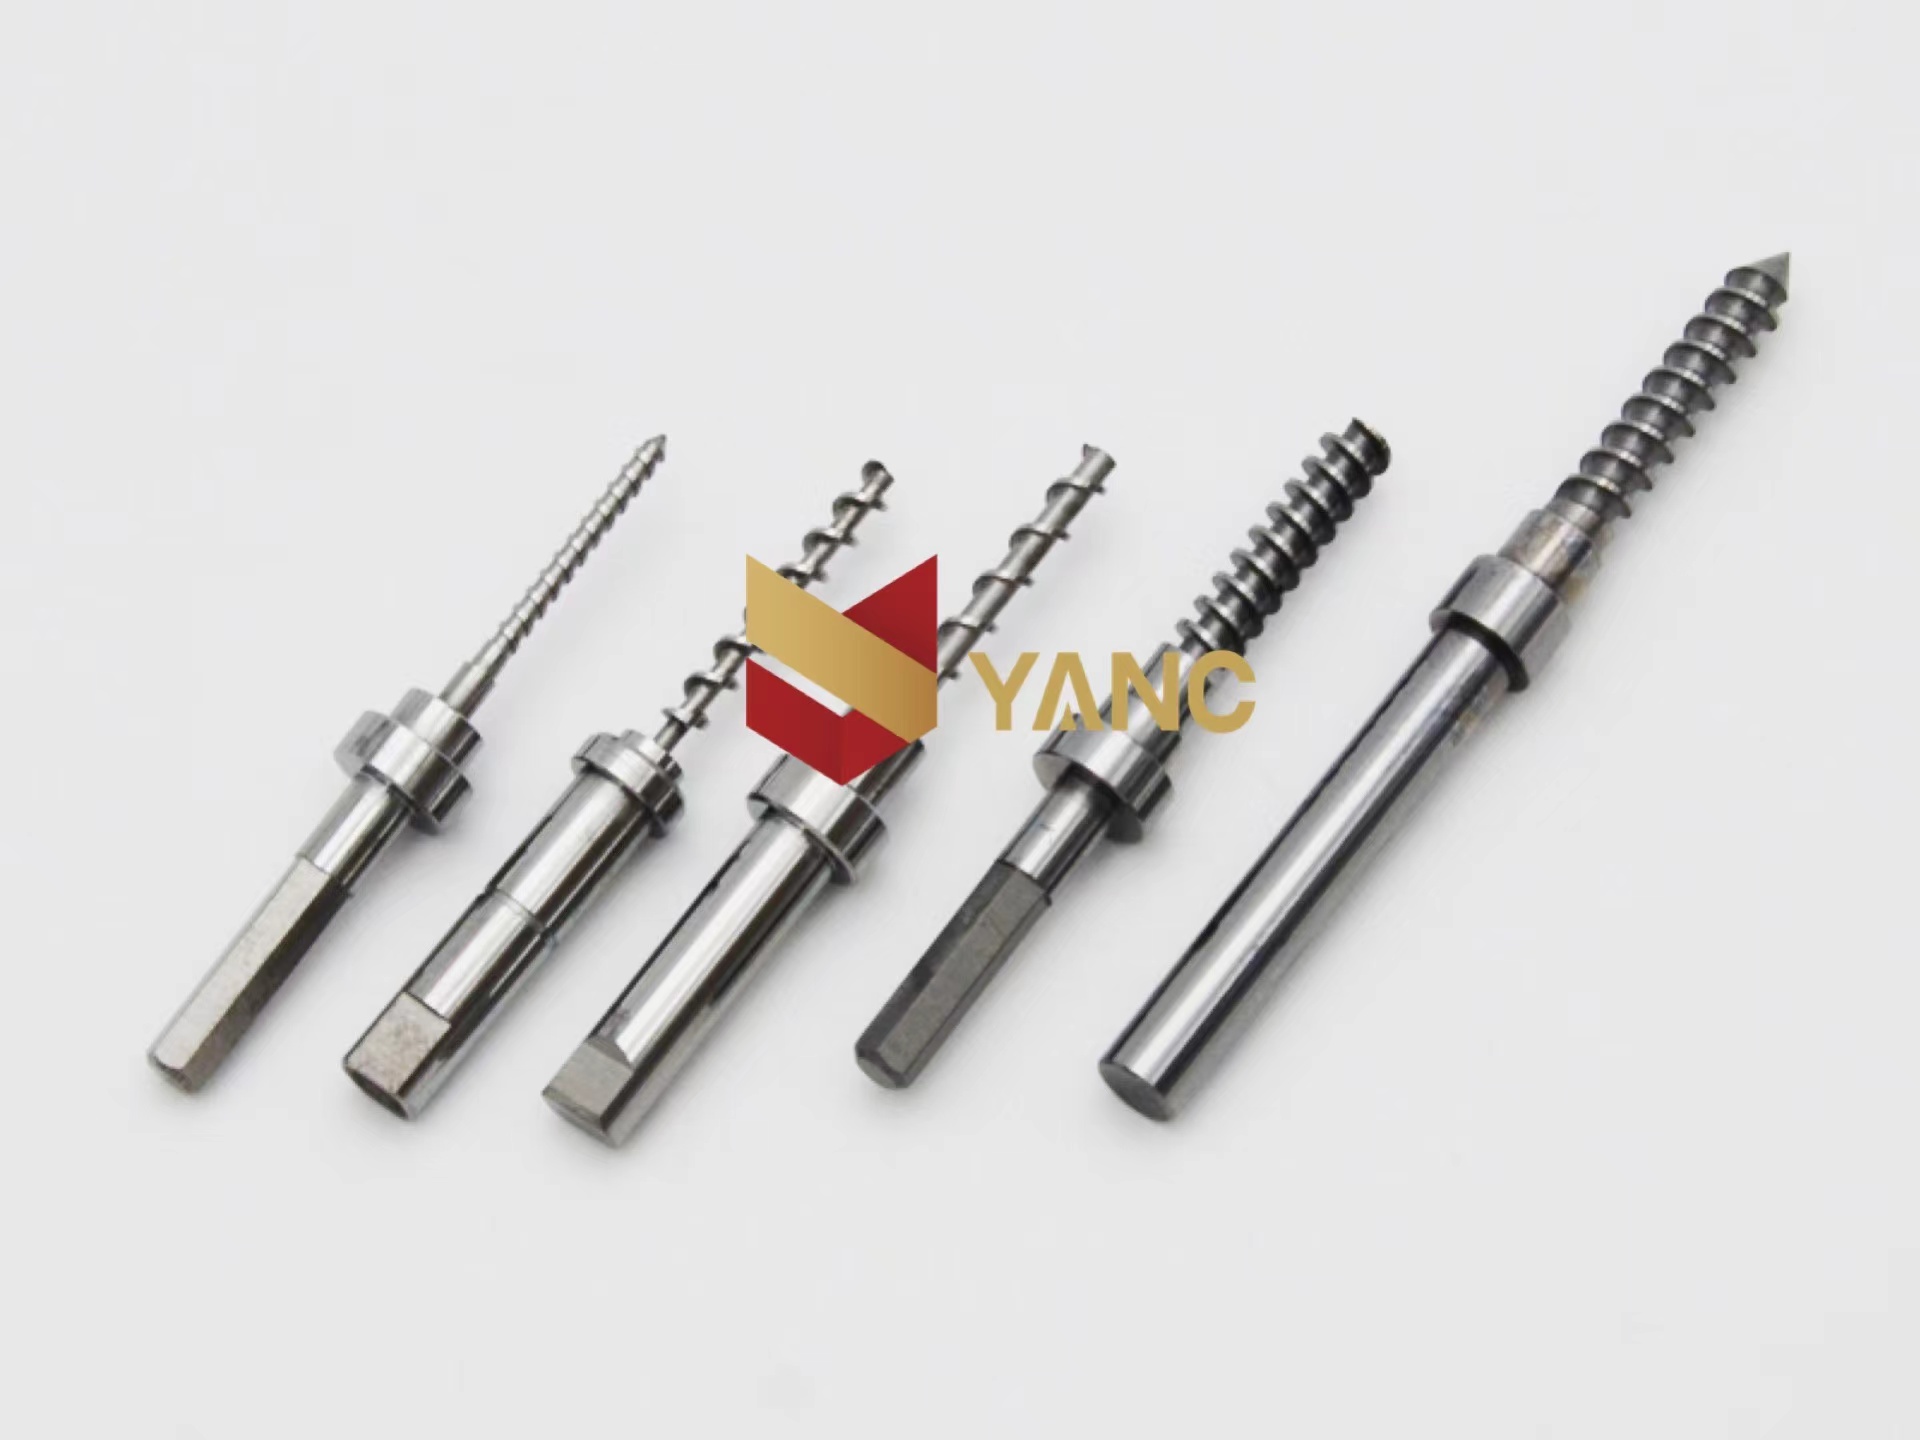 Dispensing valve accessories